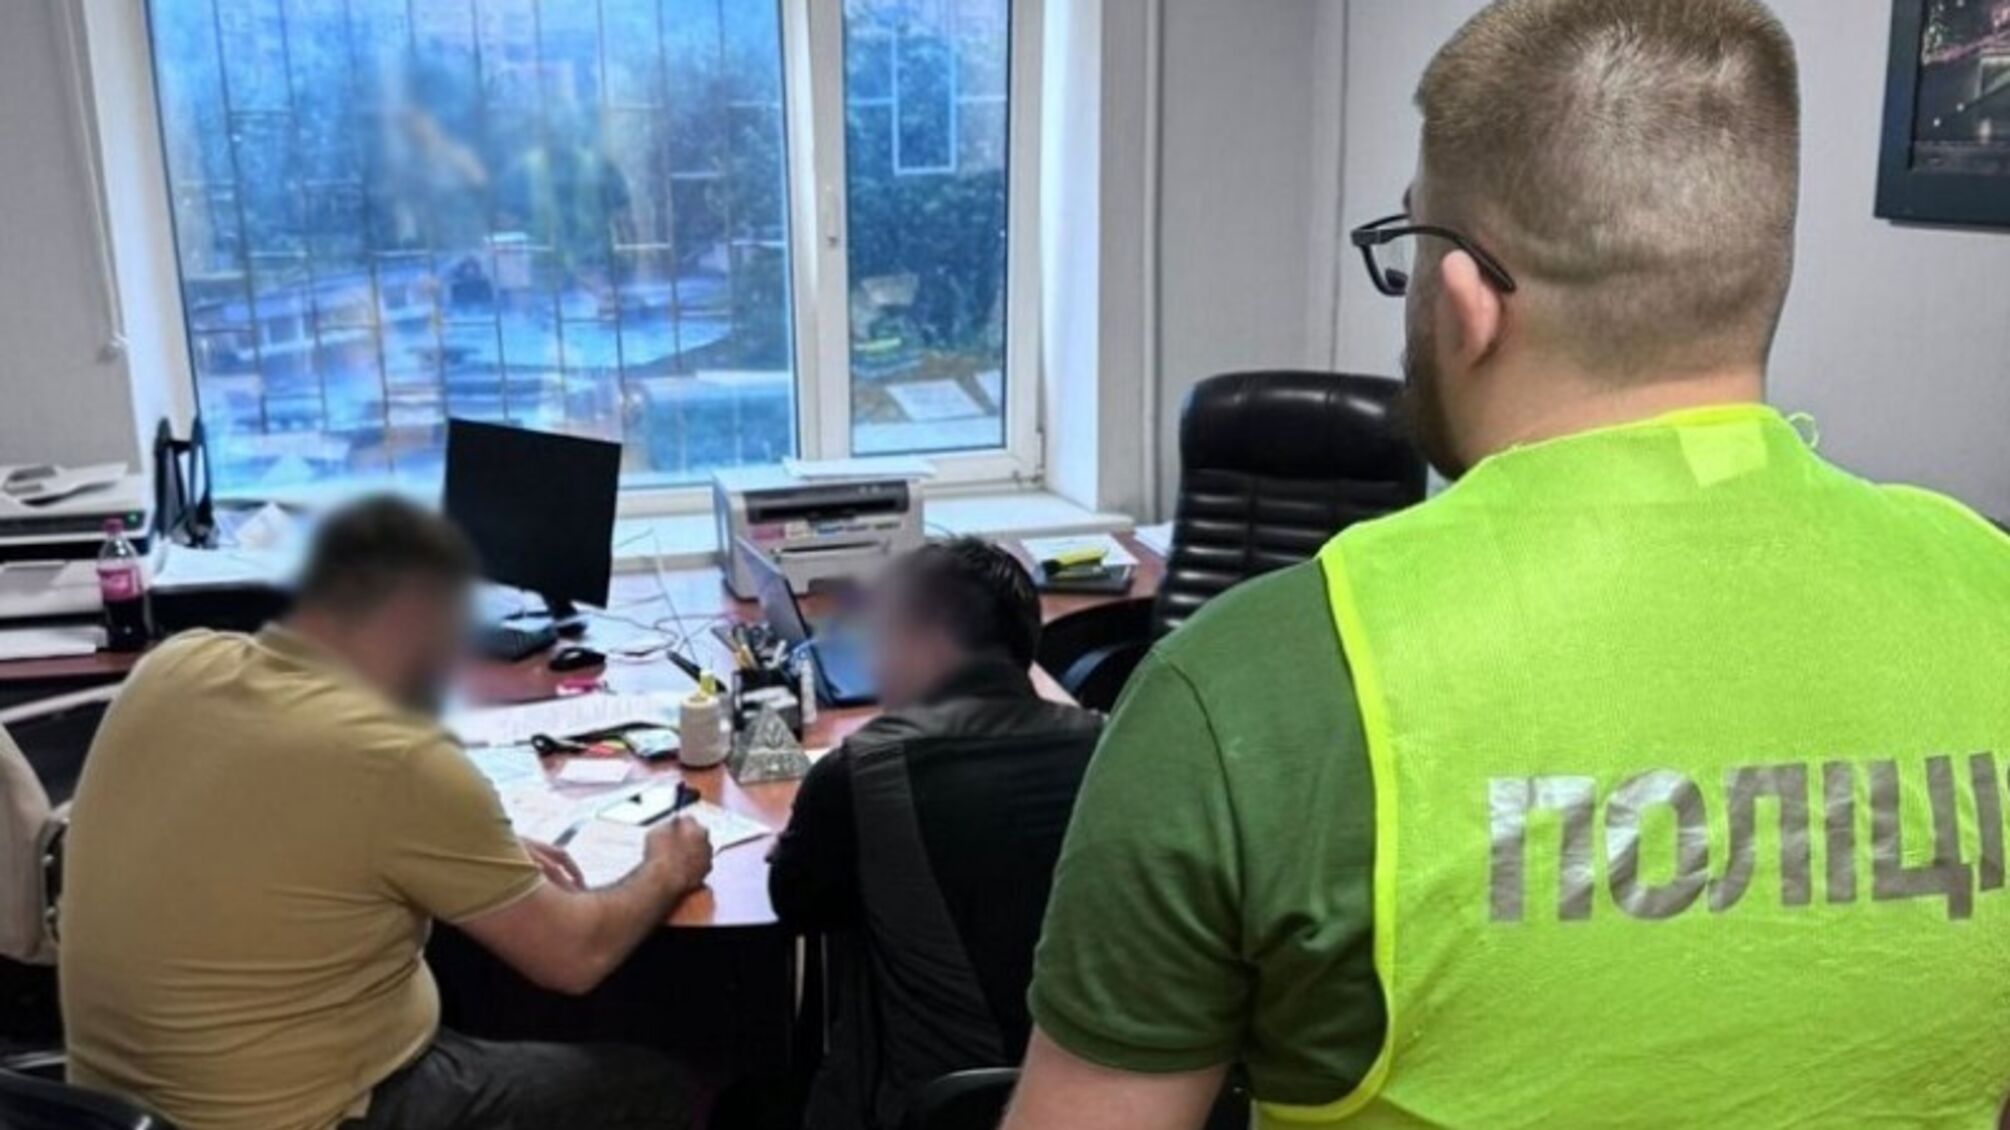  Колишні посадовці 'Київзеленбуду' завищили обсяги робіт та матеріалів: збитки понад 1,3 мільйона гривень